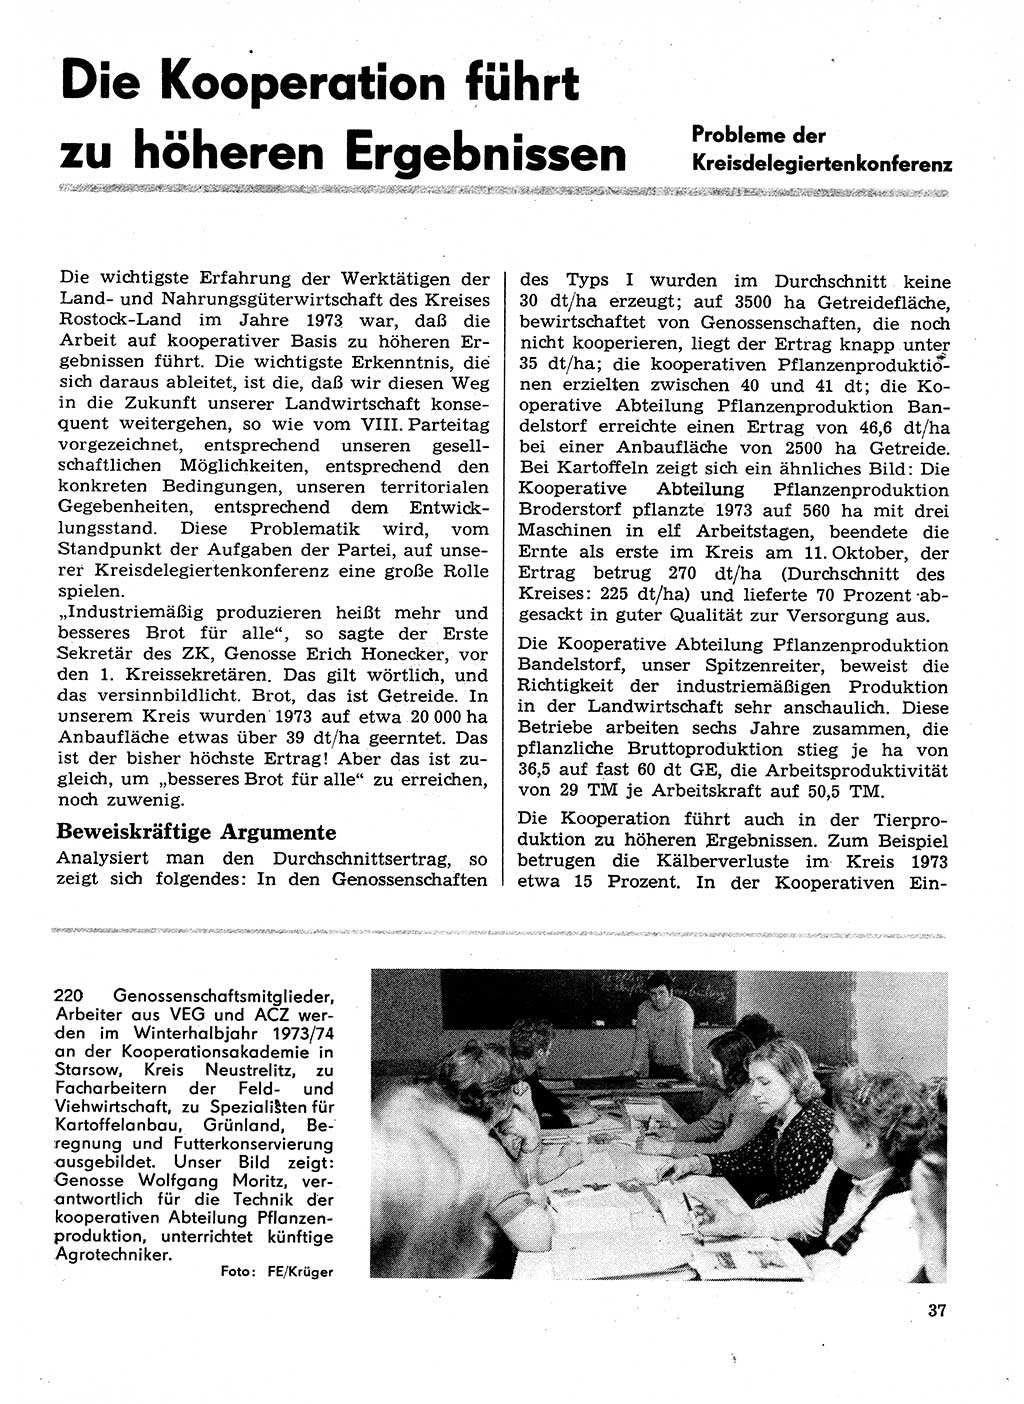 Neuer Weg (NW), Organ des Zentralkomitees (ZK) der SED (Sozialistische Einheitspartei Deutschlands) für Fragen des Parteilebens, 29. Jahrgang [Deutsche Demokratische Republik (DDR)] 1974, Seite 37 (NW ZK SED DDR 1974, S. 37)